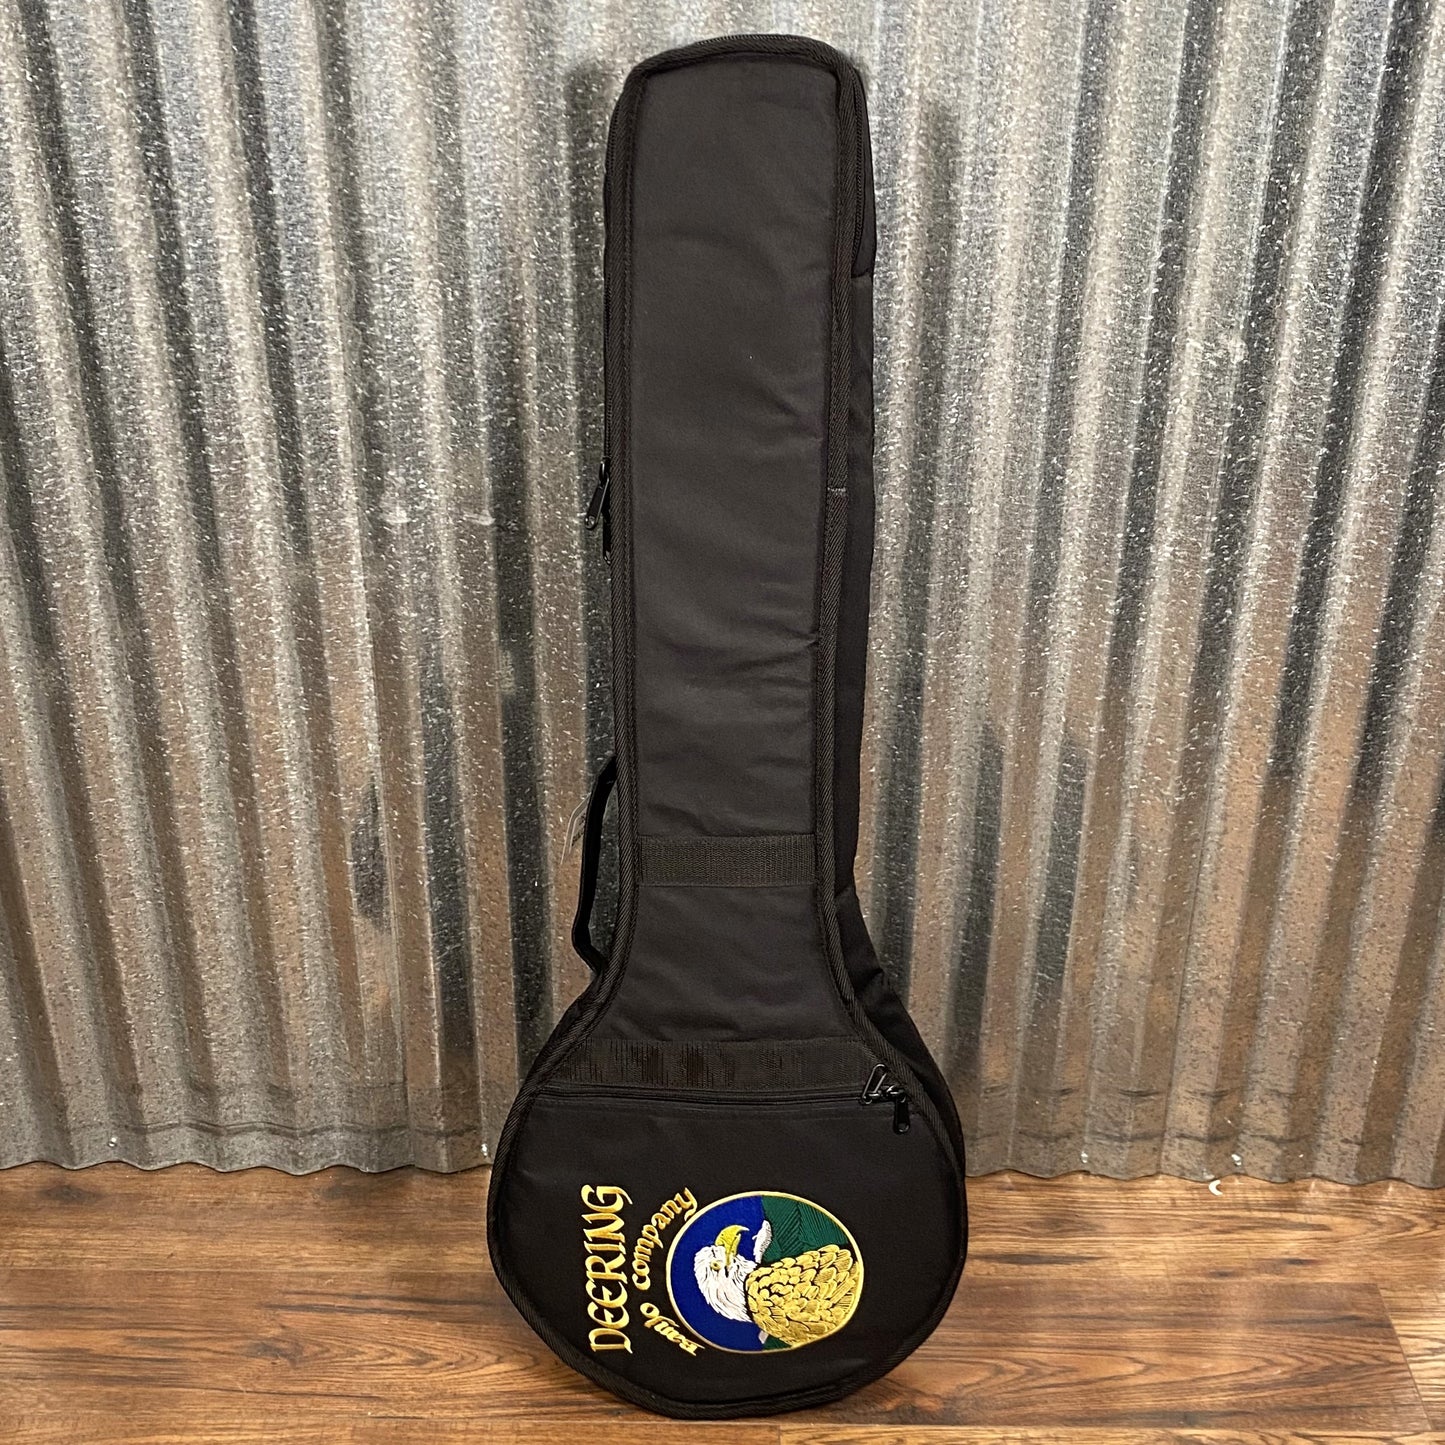 Deering GP-BR Goodtime 5 Sting Banjo Beginner Pack Picks Tuner Strap & Bag